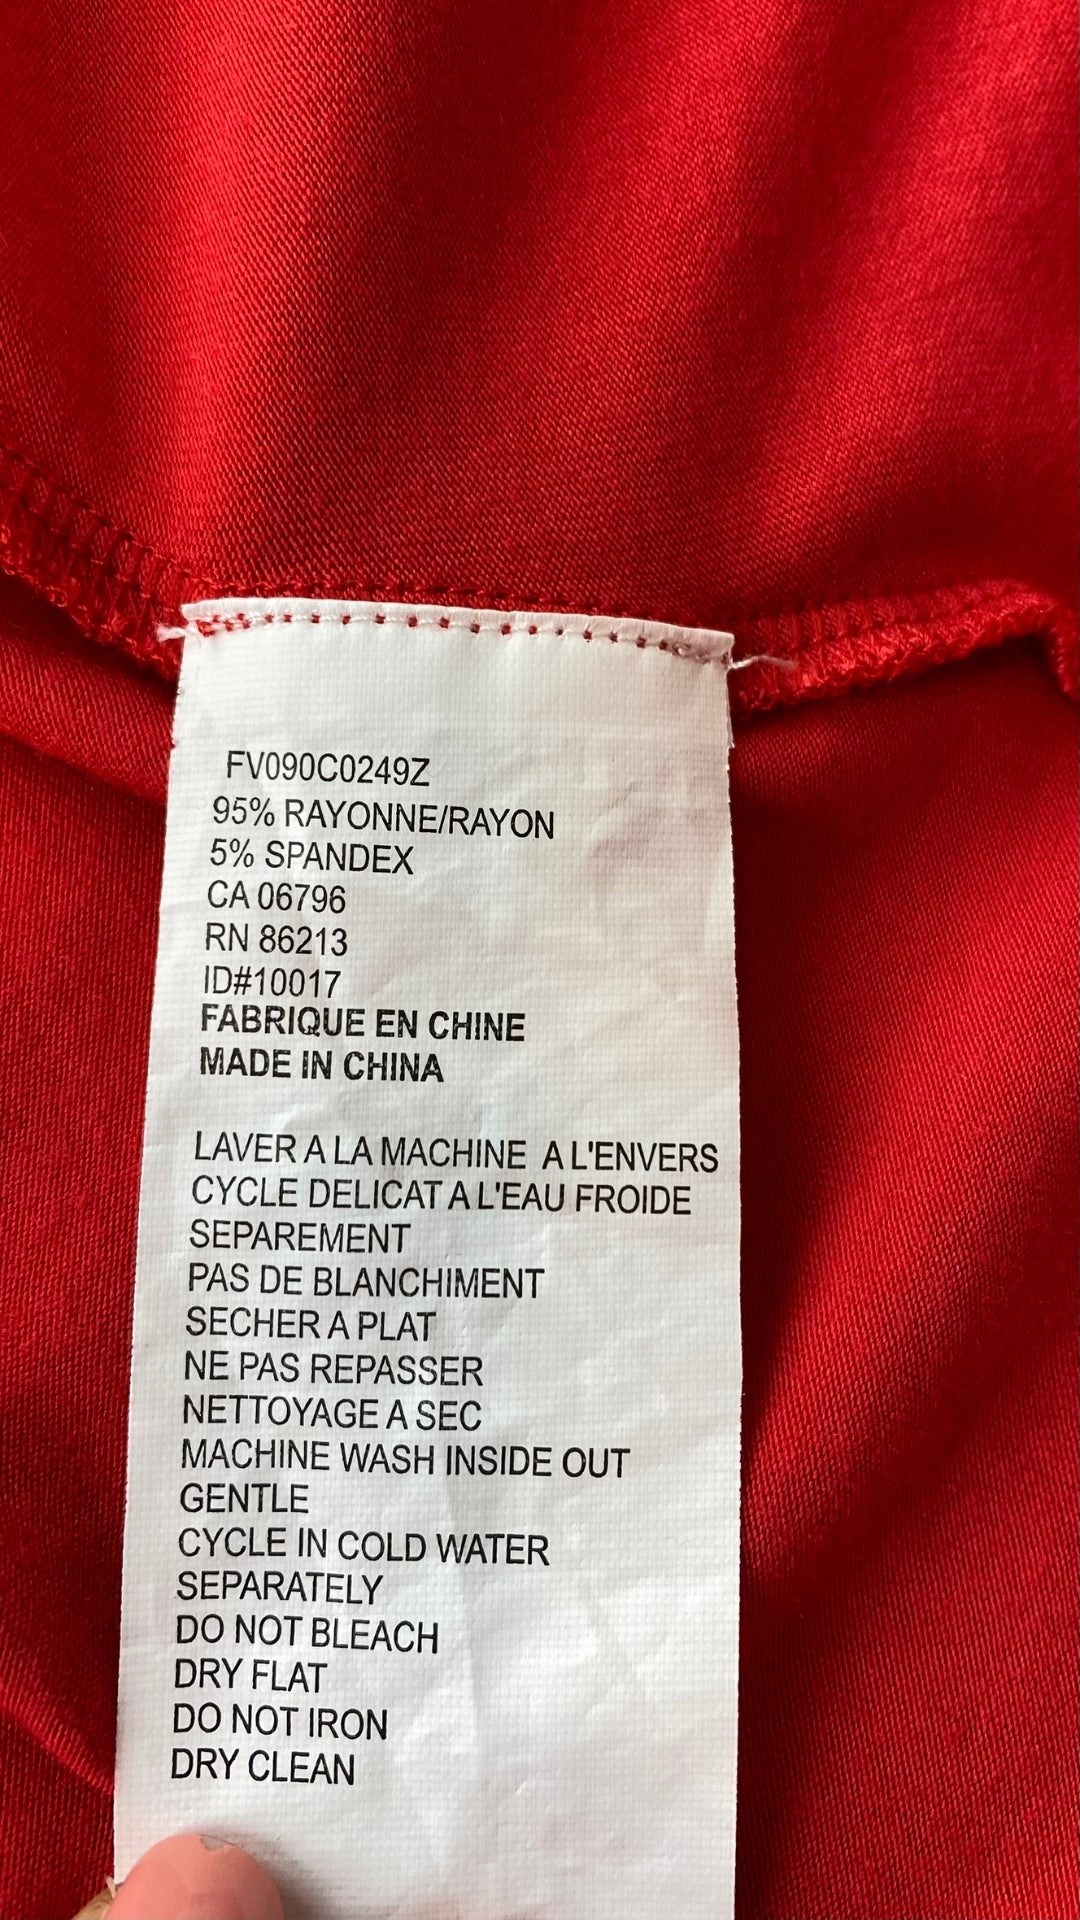 Robe rouge extensible cache-coeur drapé Tristan, taille medium. Vue de l'étiquette de composition et entretien.